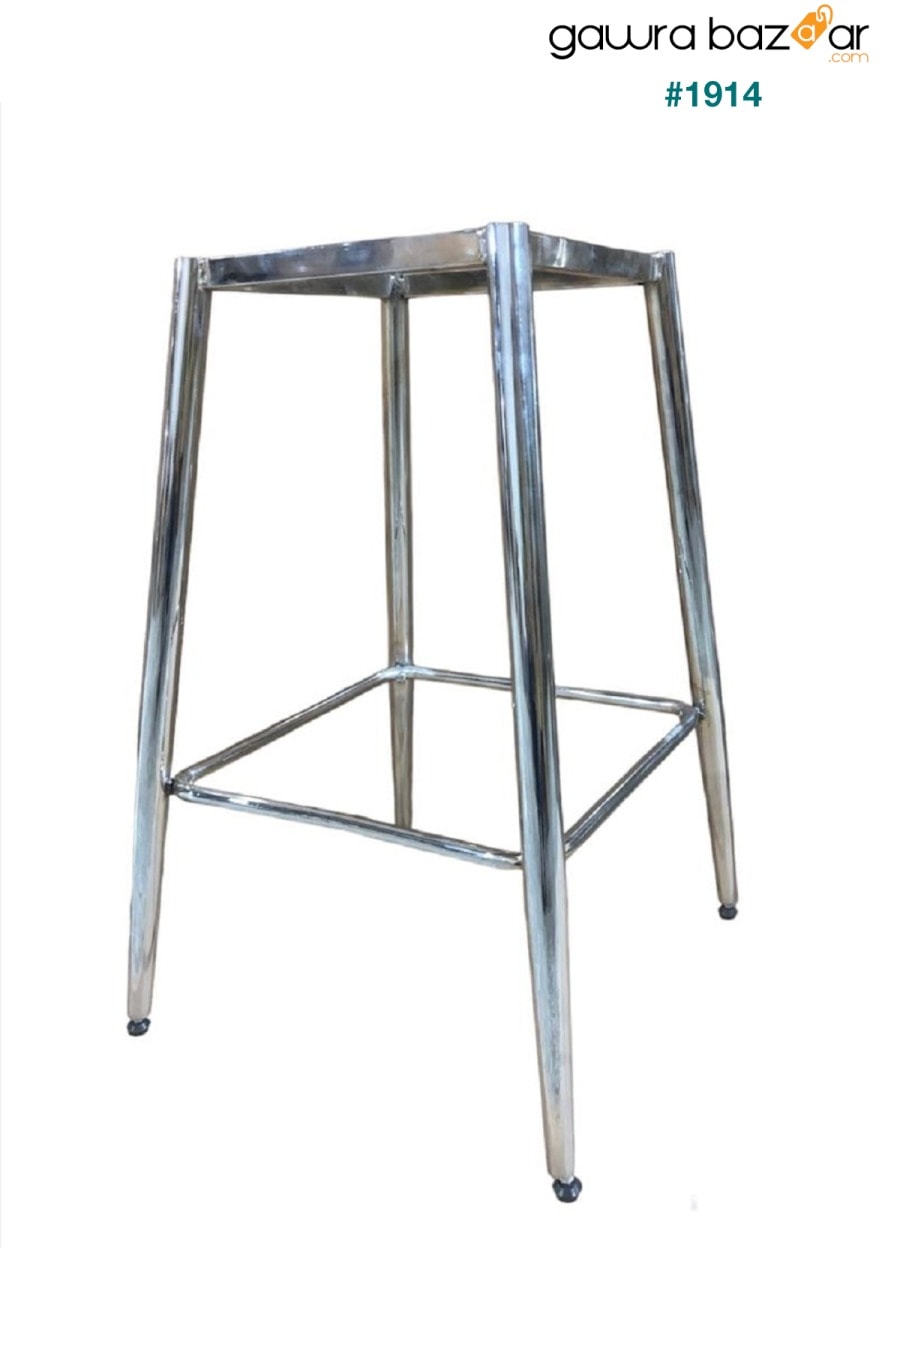 2 قطعة كرسي مطبخ وبار من تيتان أدا - كرسي مرتفع - قماش قابل للإزالة للوجه - أرجل ذهبية Pİ MOBİLYA 4